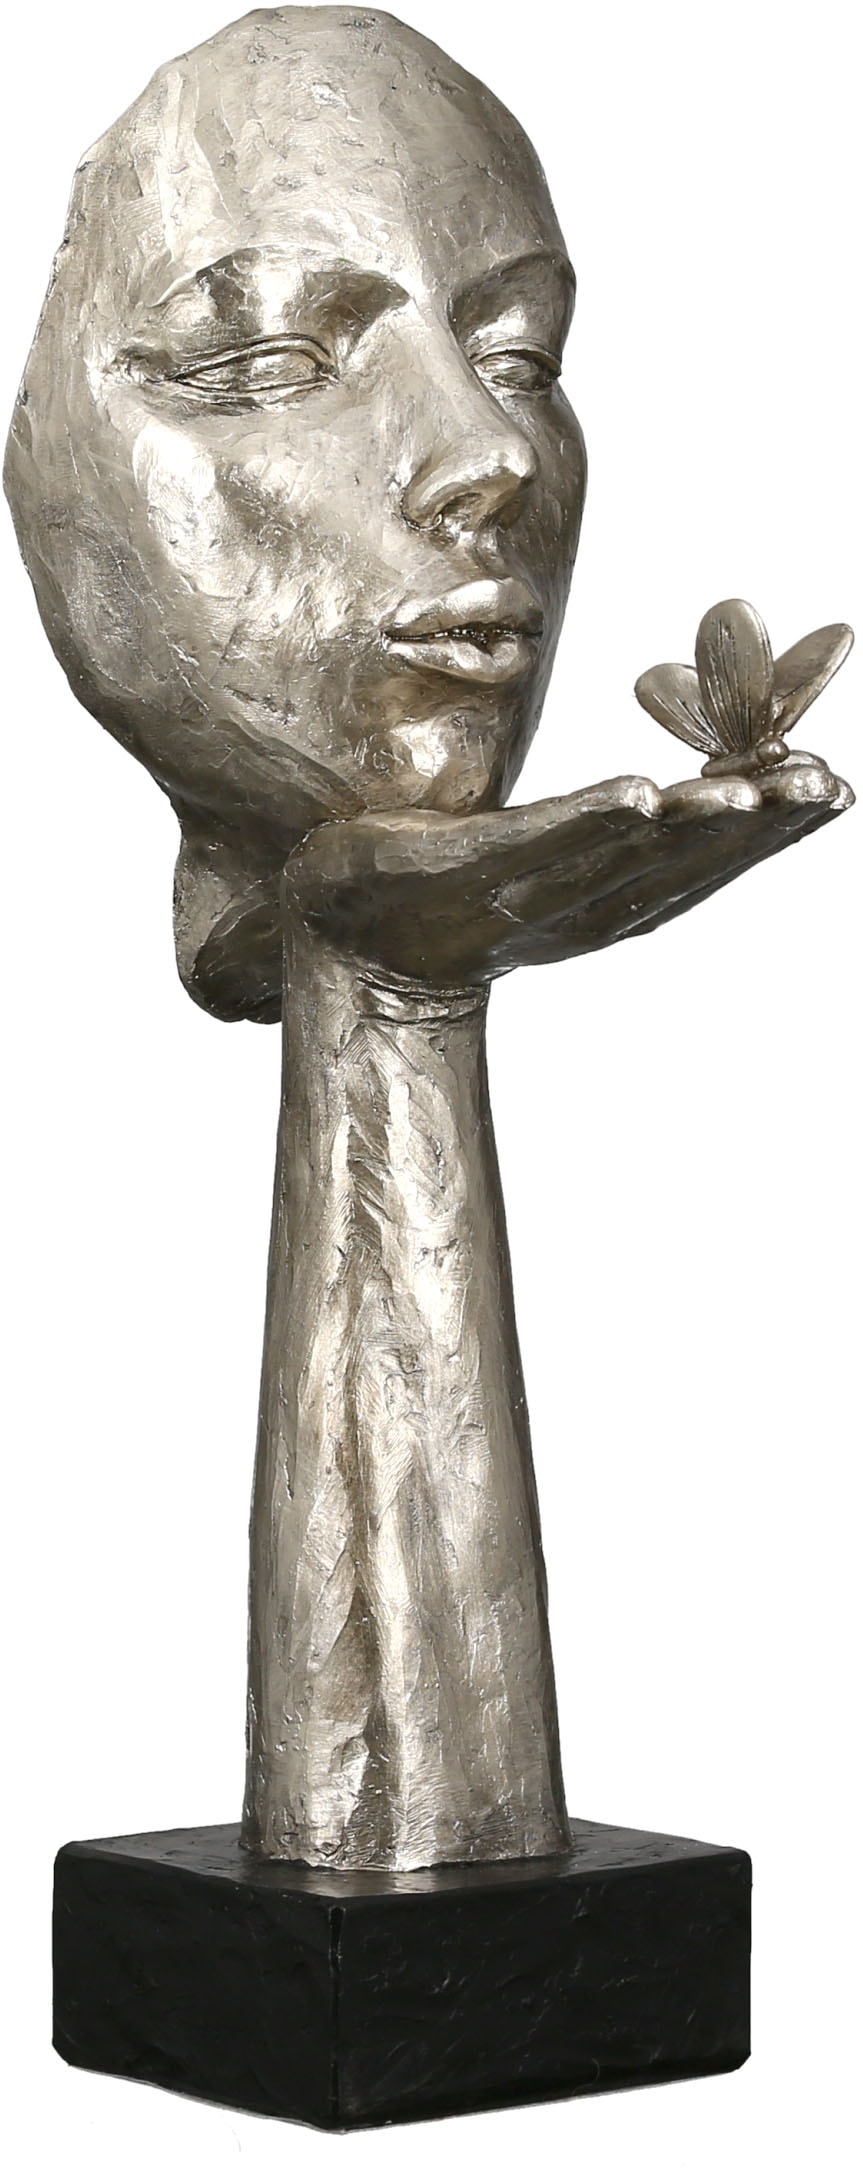 GILDE Dekofigur »Skulptur Desire, antikfinish«, silberfarben, Polyresin